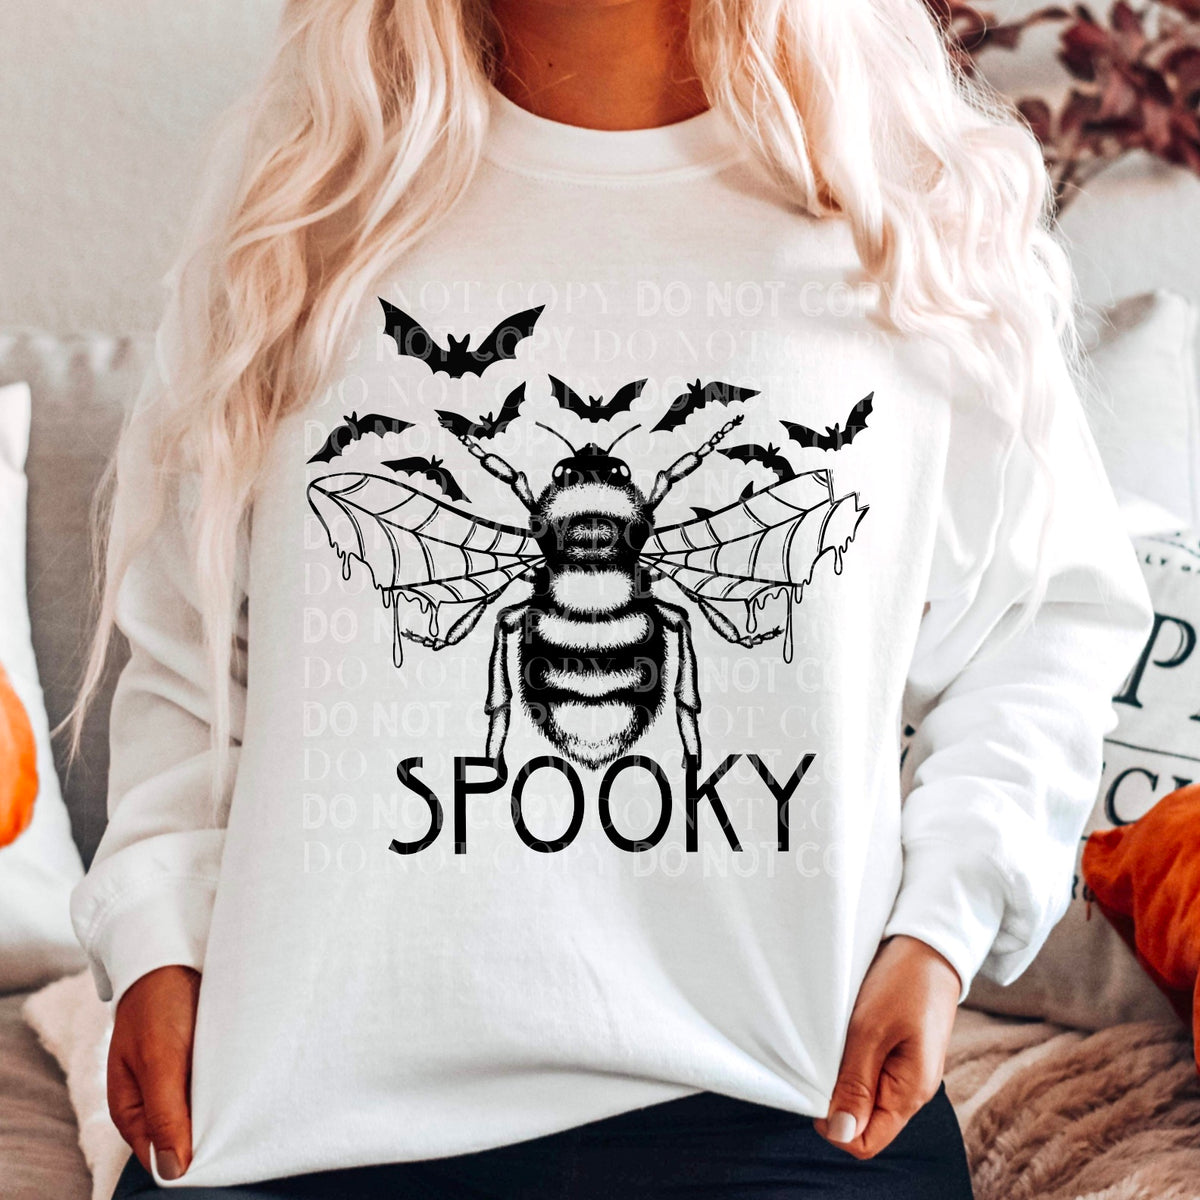 Bee Spooky  Cerra's Shop Creates   